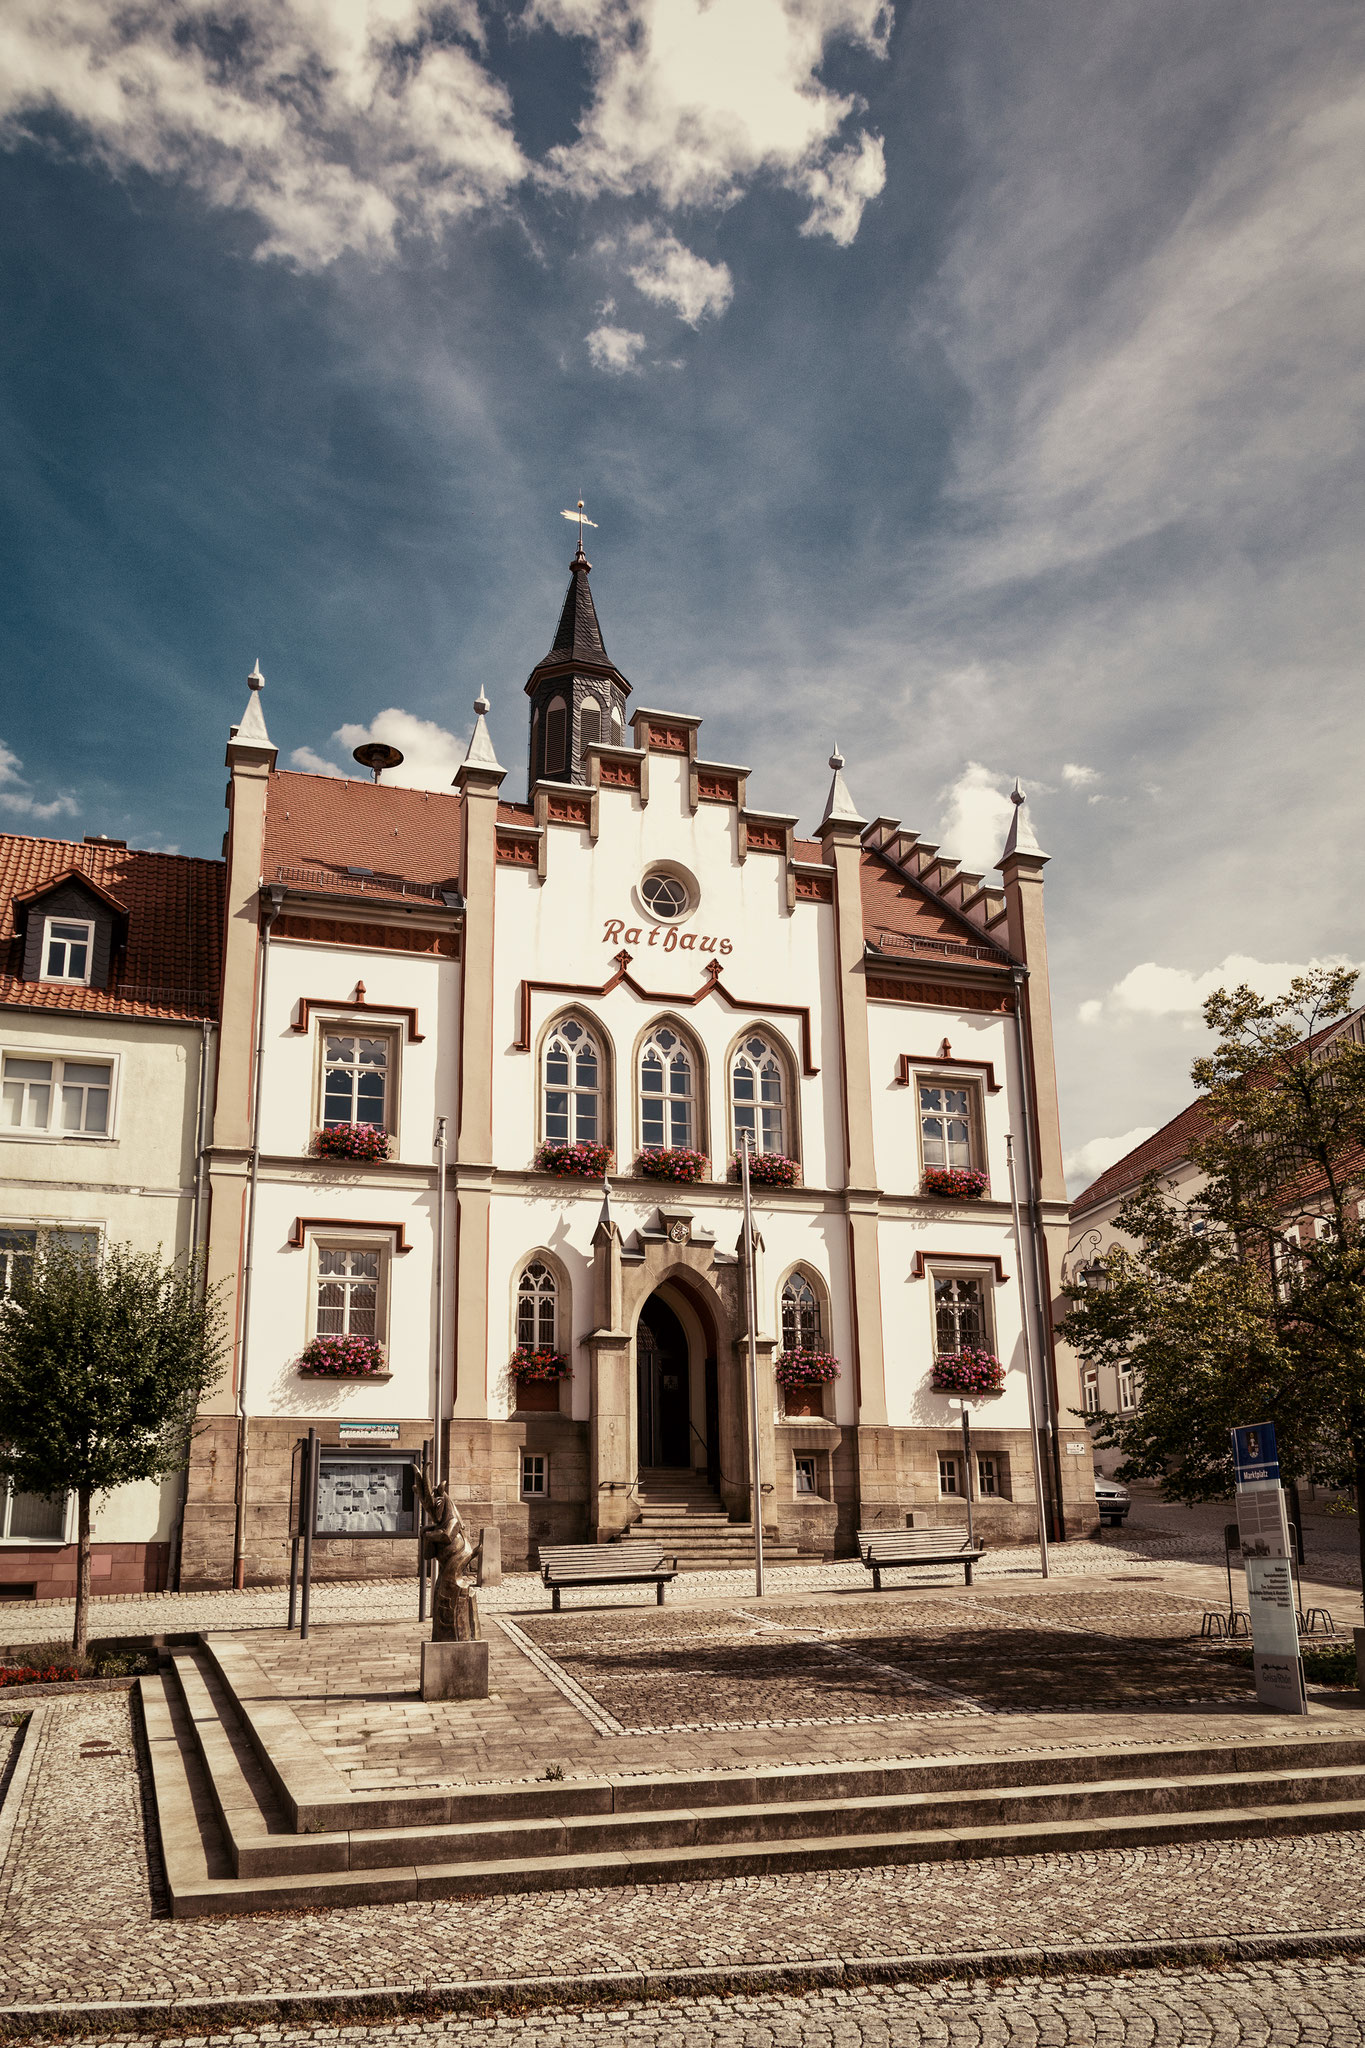 Stadtverwaltung Geisa - Rathaus der Stadt Geisa an der Rhön